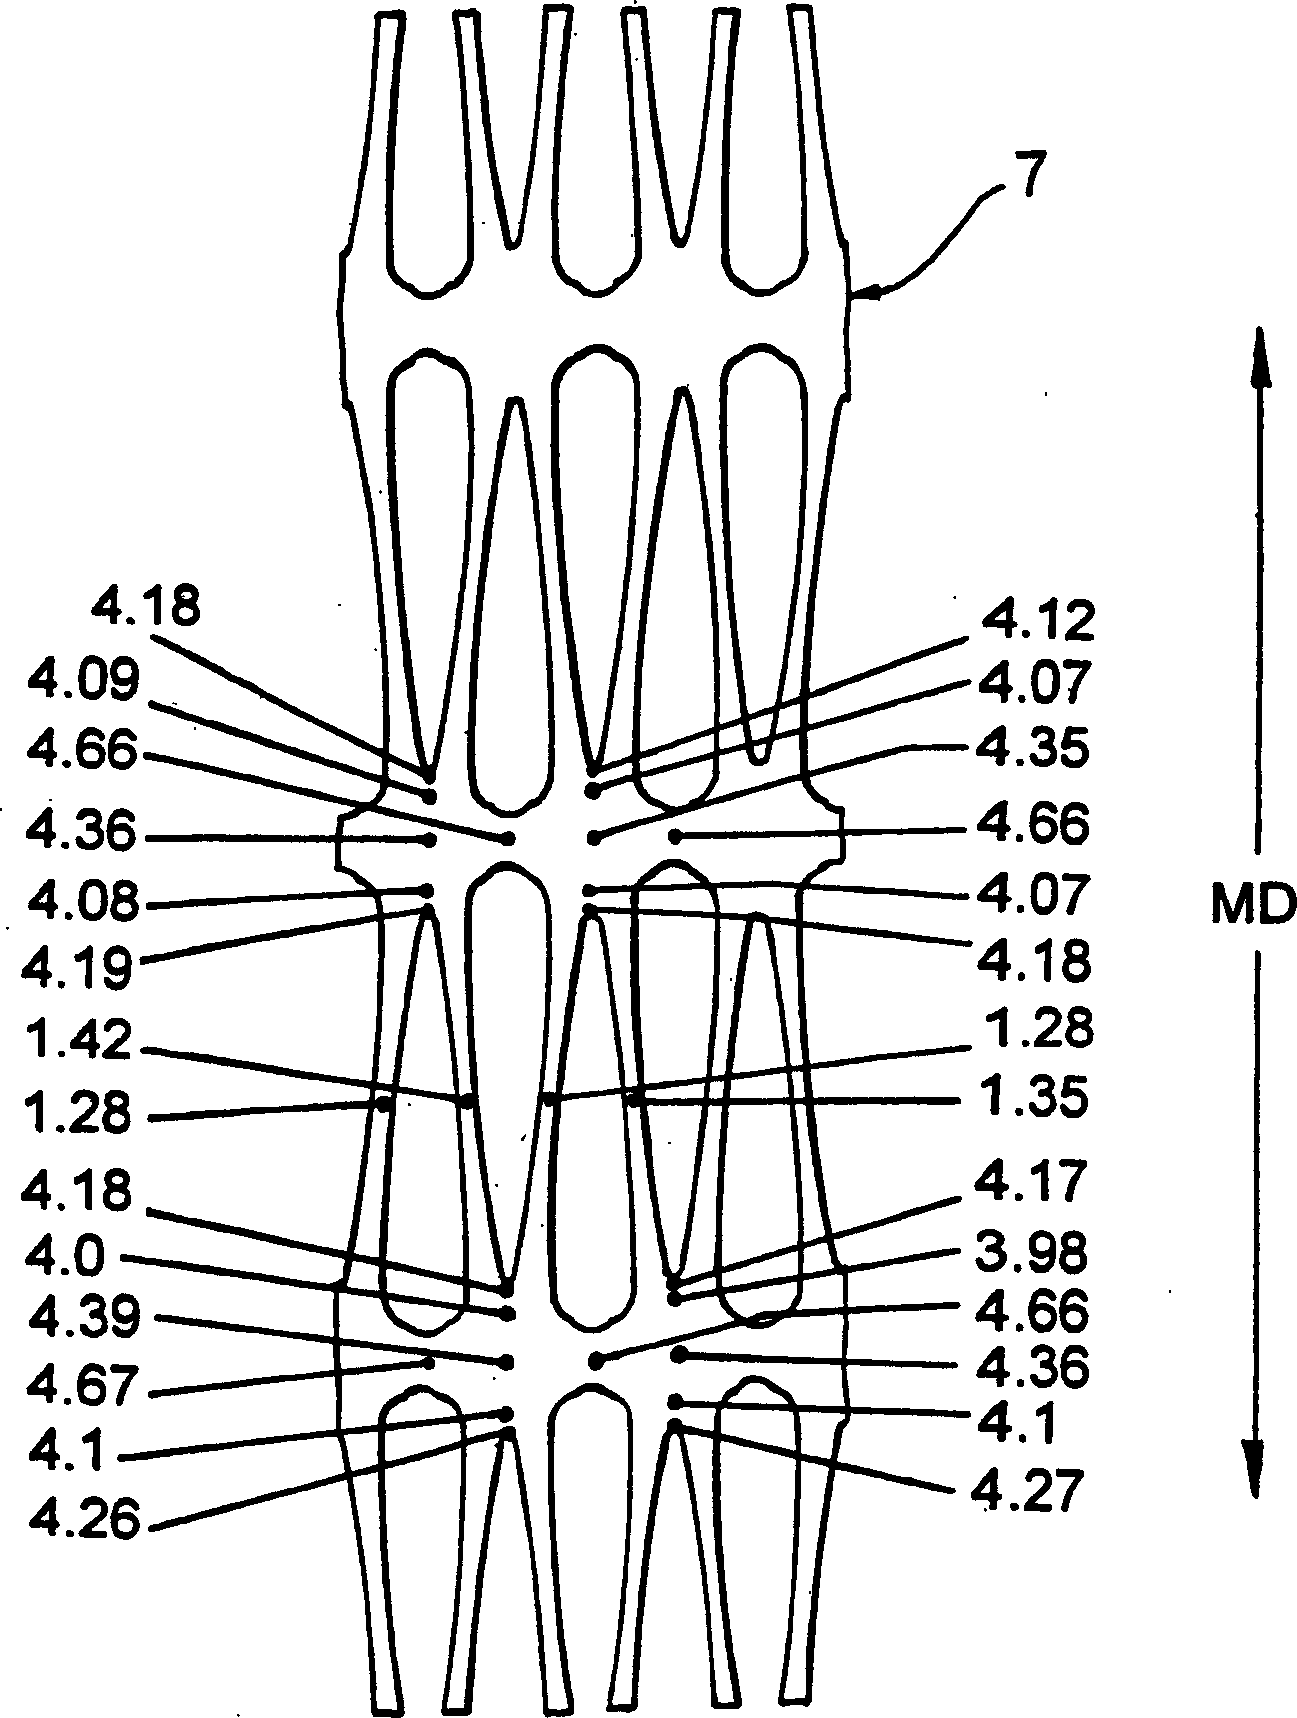 X-ray fluuorroscopy device